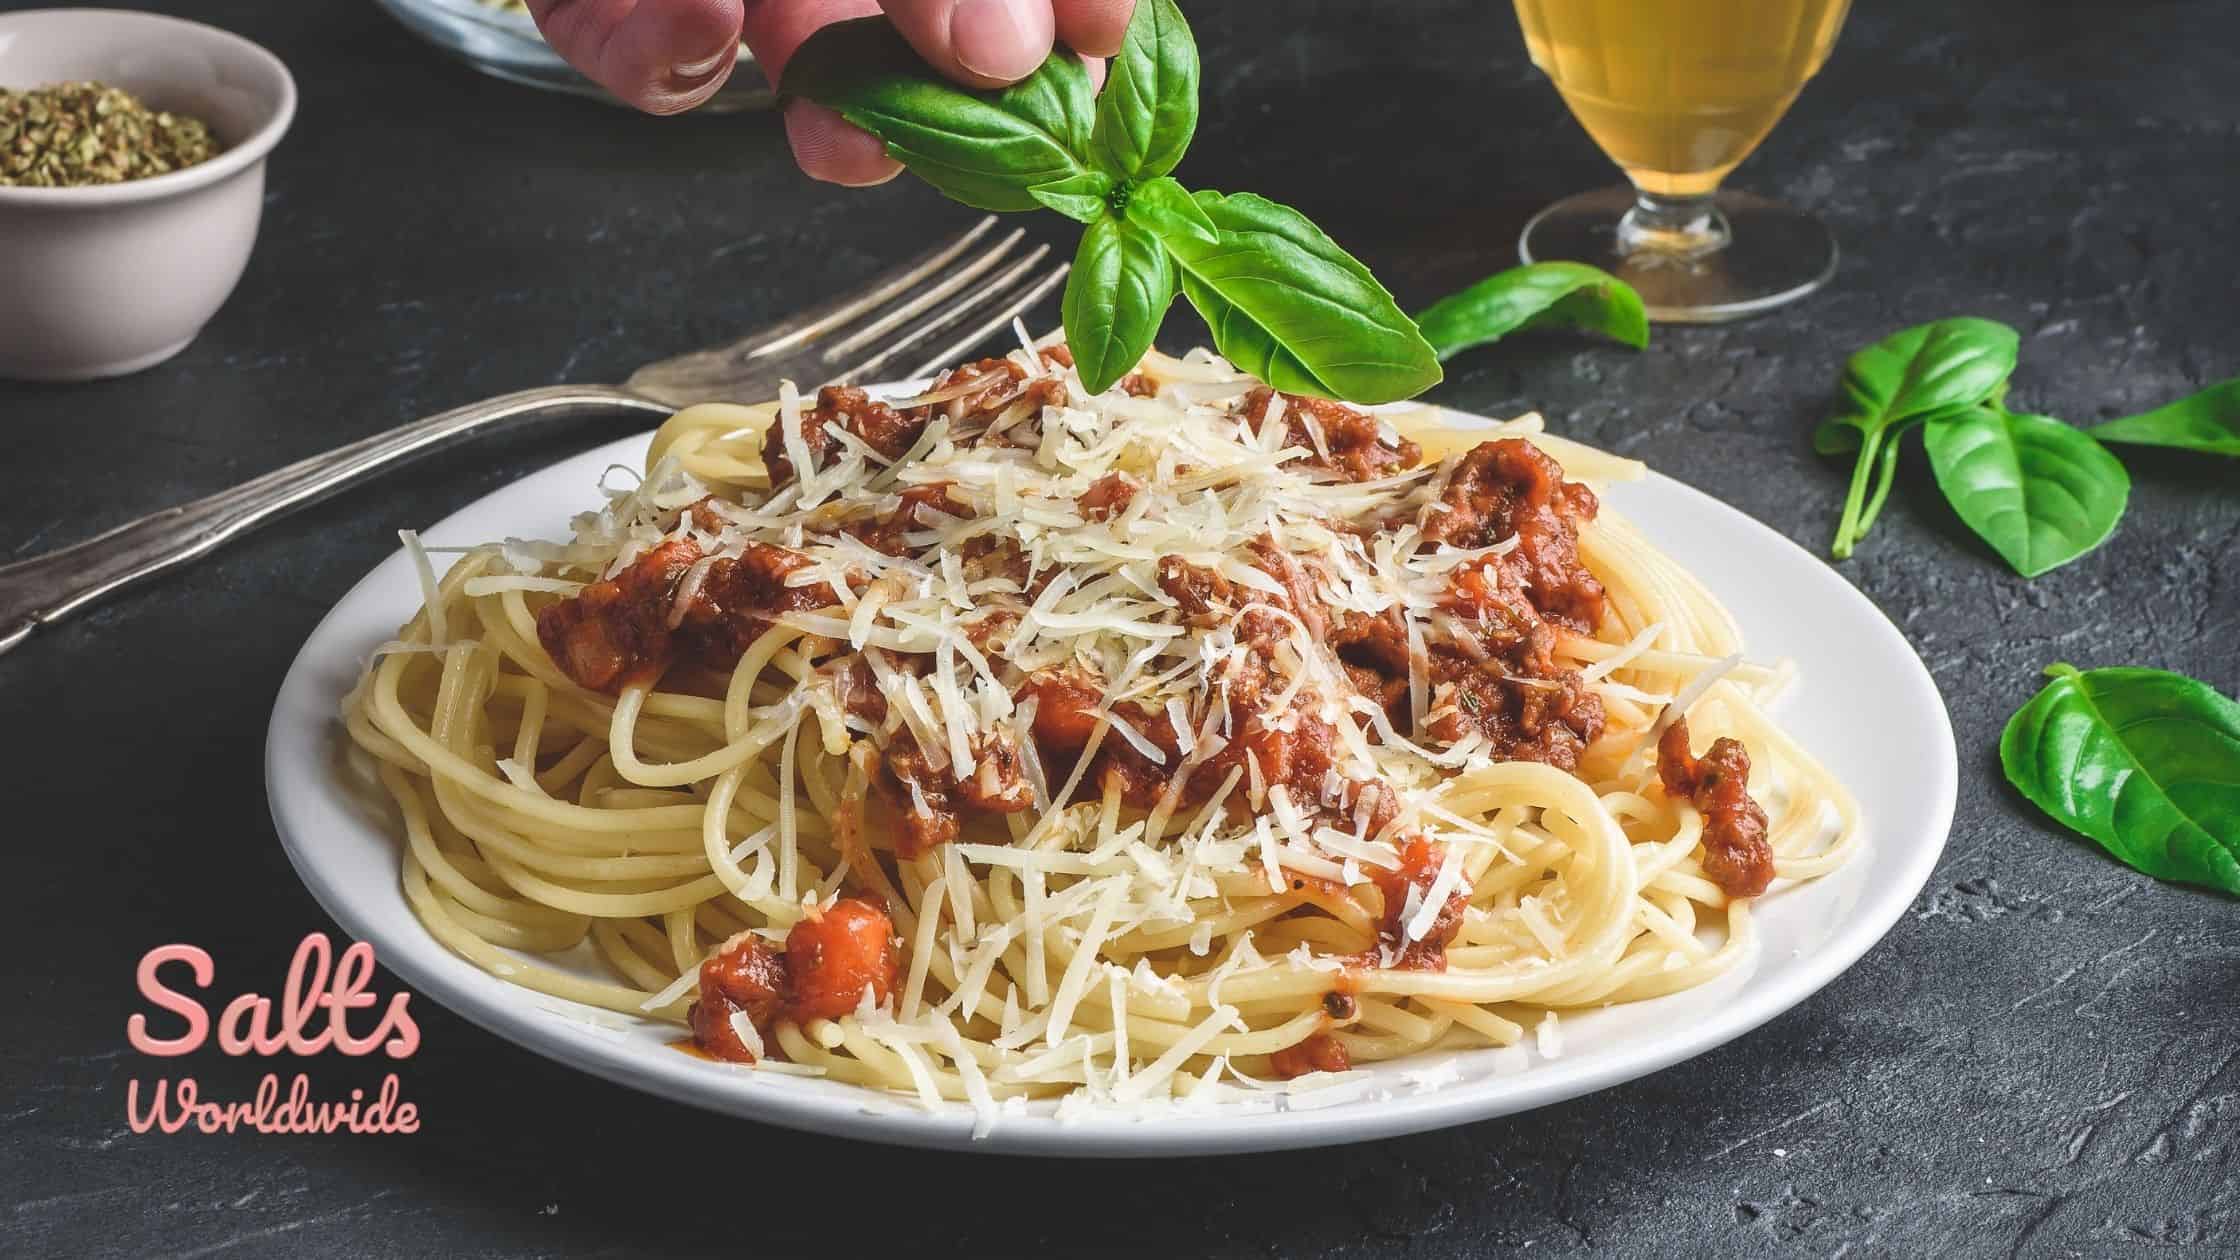 spaghetti bolognese recipe